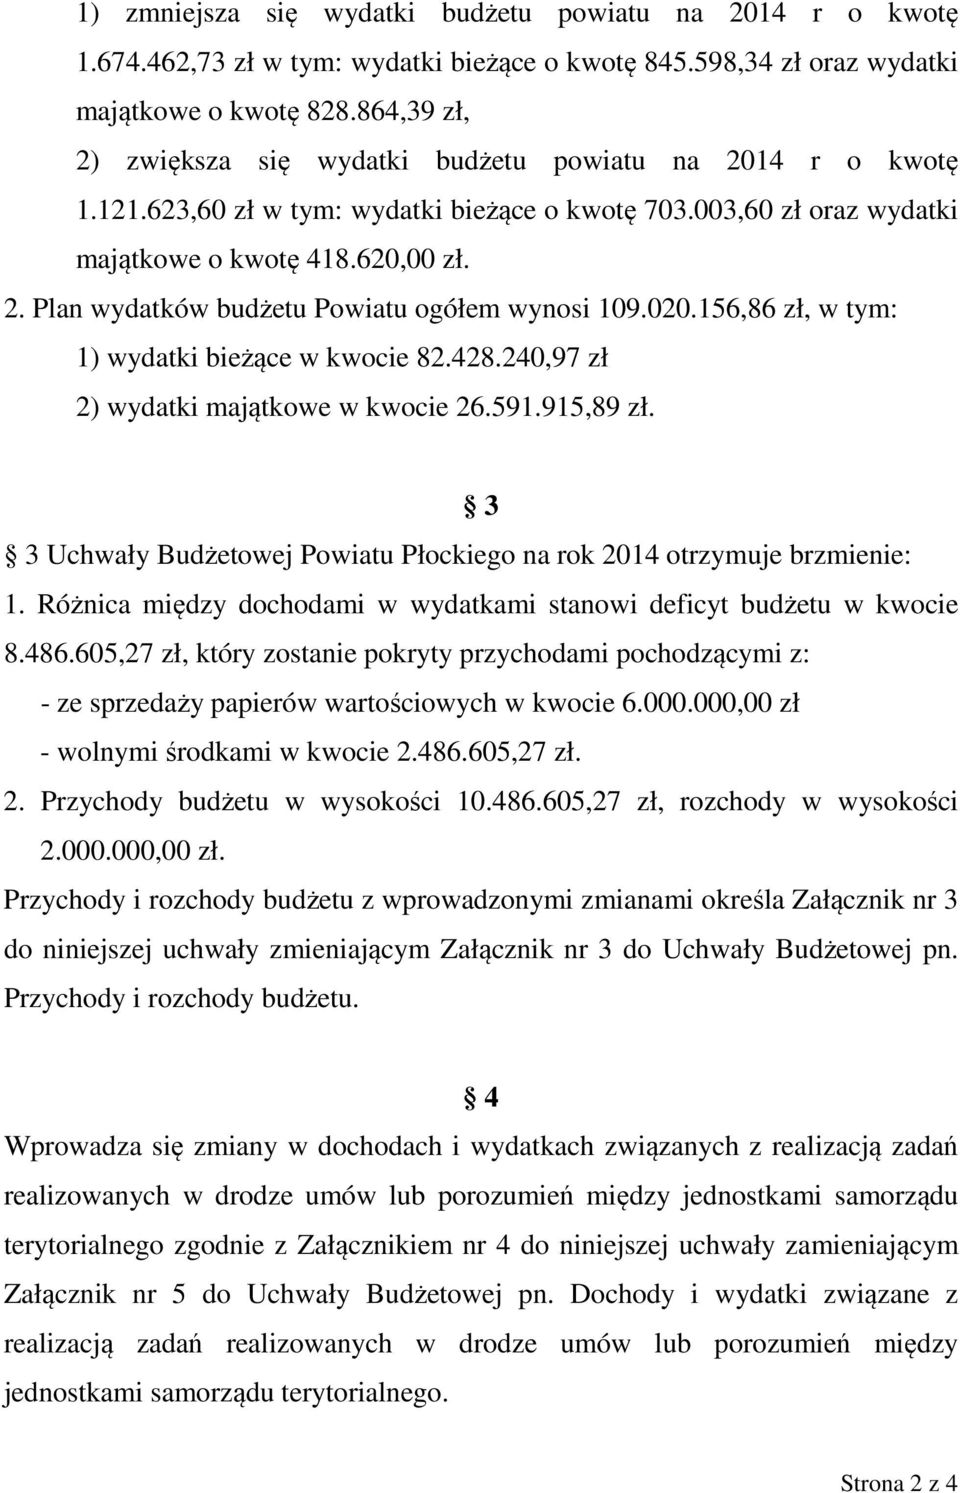 020.156,86 zł, w tym: 1) wydatki bieżące w kwocie 82.428.240,97 zł 2) wydatki majątkowe w kwocie 26.591.915,89 zł. 3 3 Uchwały Budżetowej Powiatu Płockiego na rok 2014 otrzymuje brzmienie: 1.